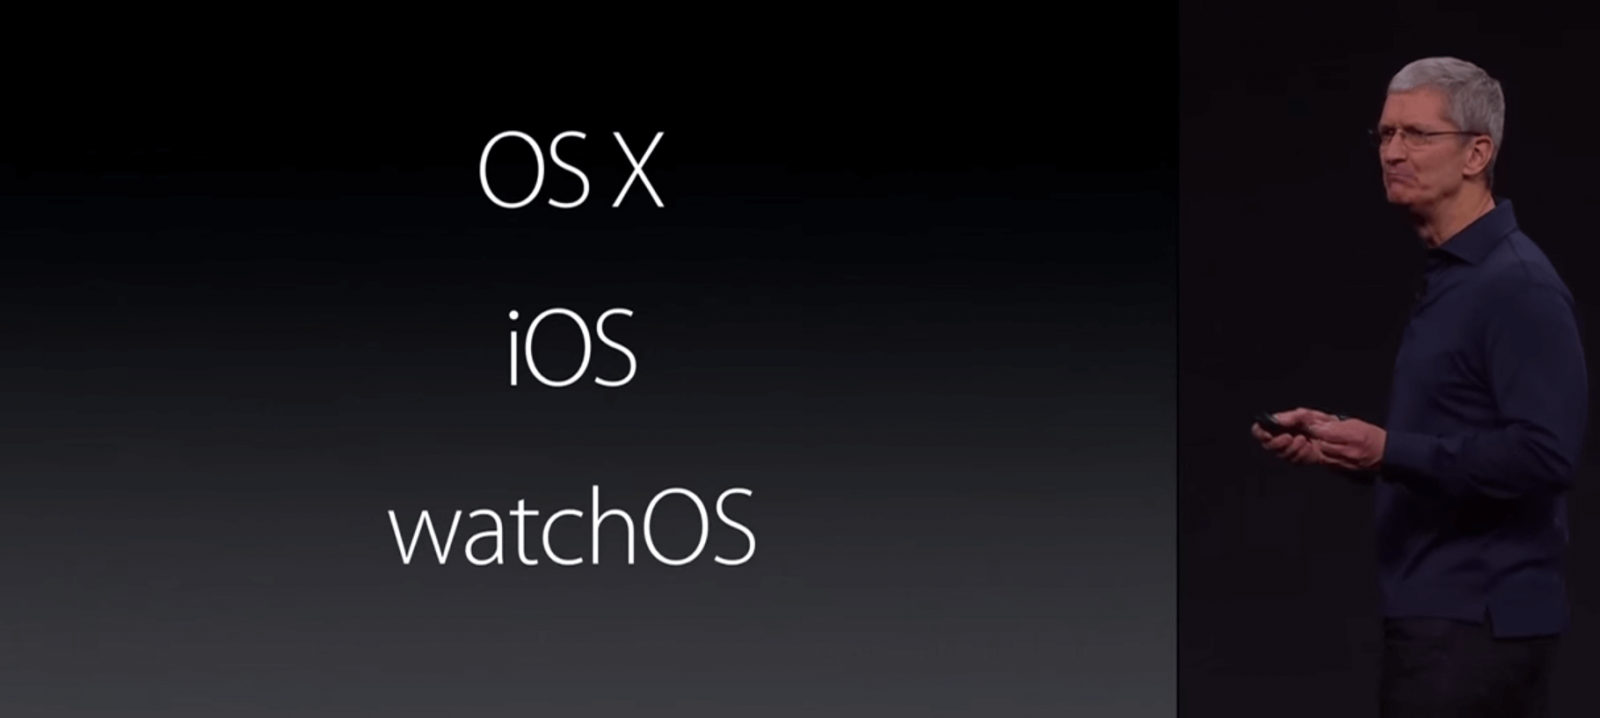 OS X, iOS и watchOS